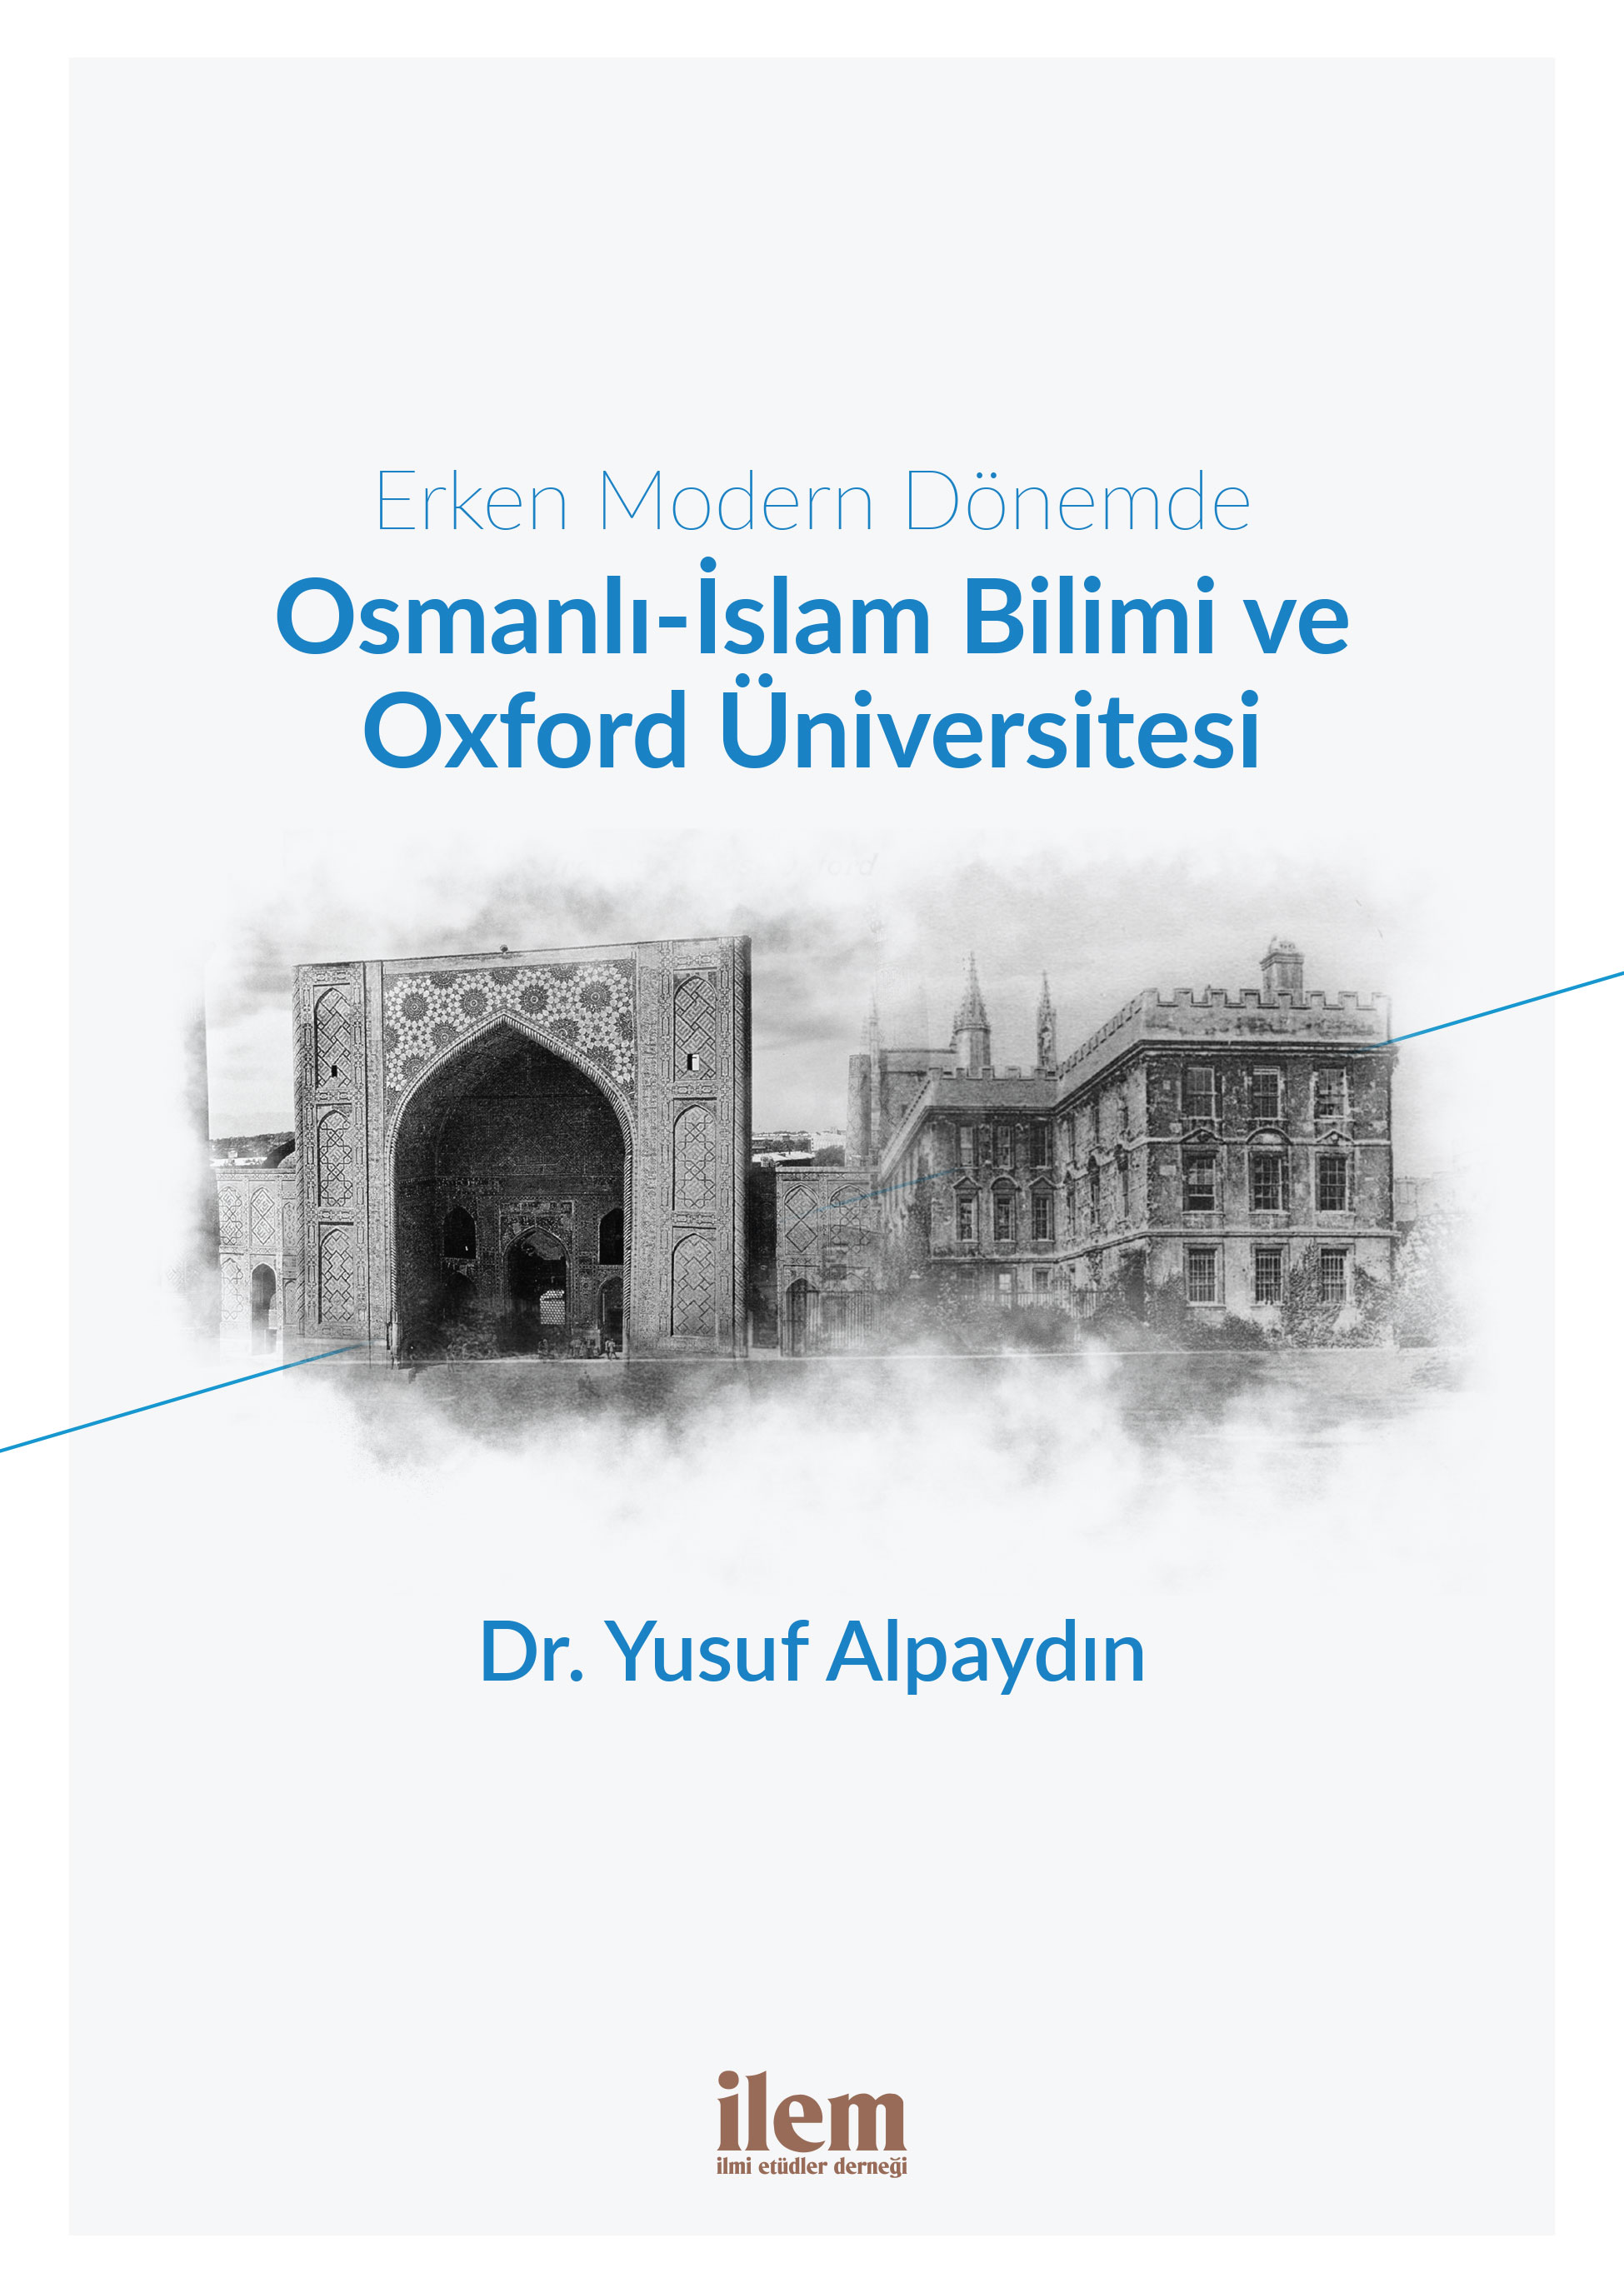 Erken Modern Dönemde Osmanlı-İslam Bilimi ve Oxford Üniversitesi